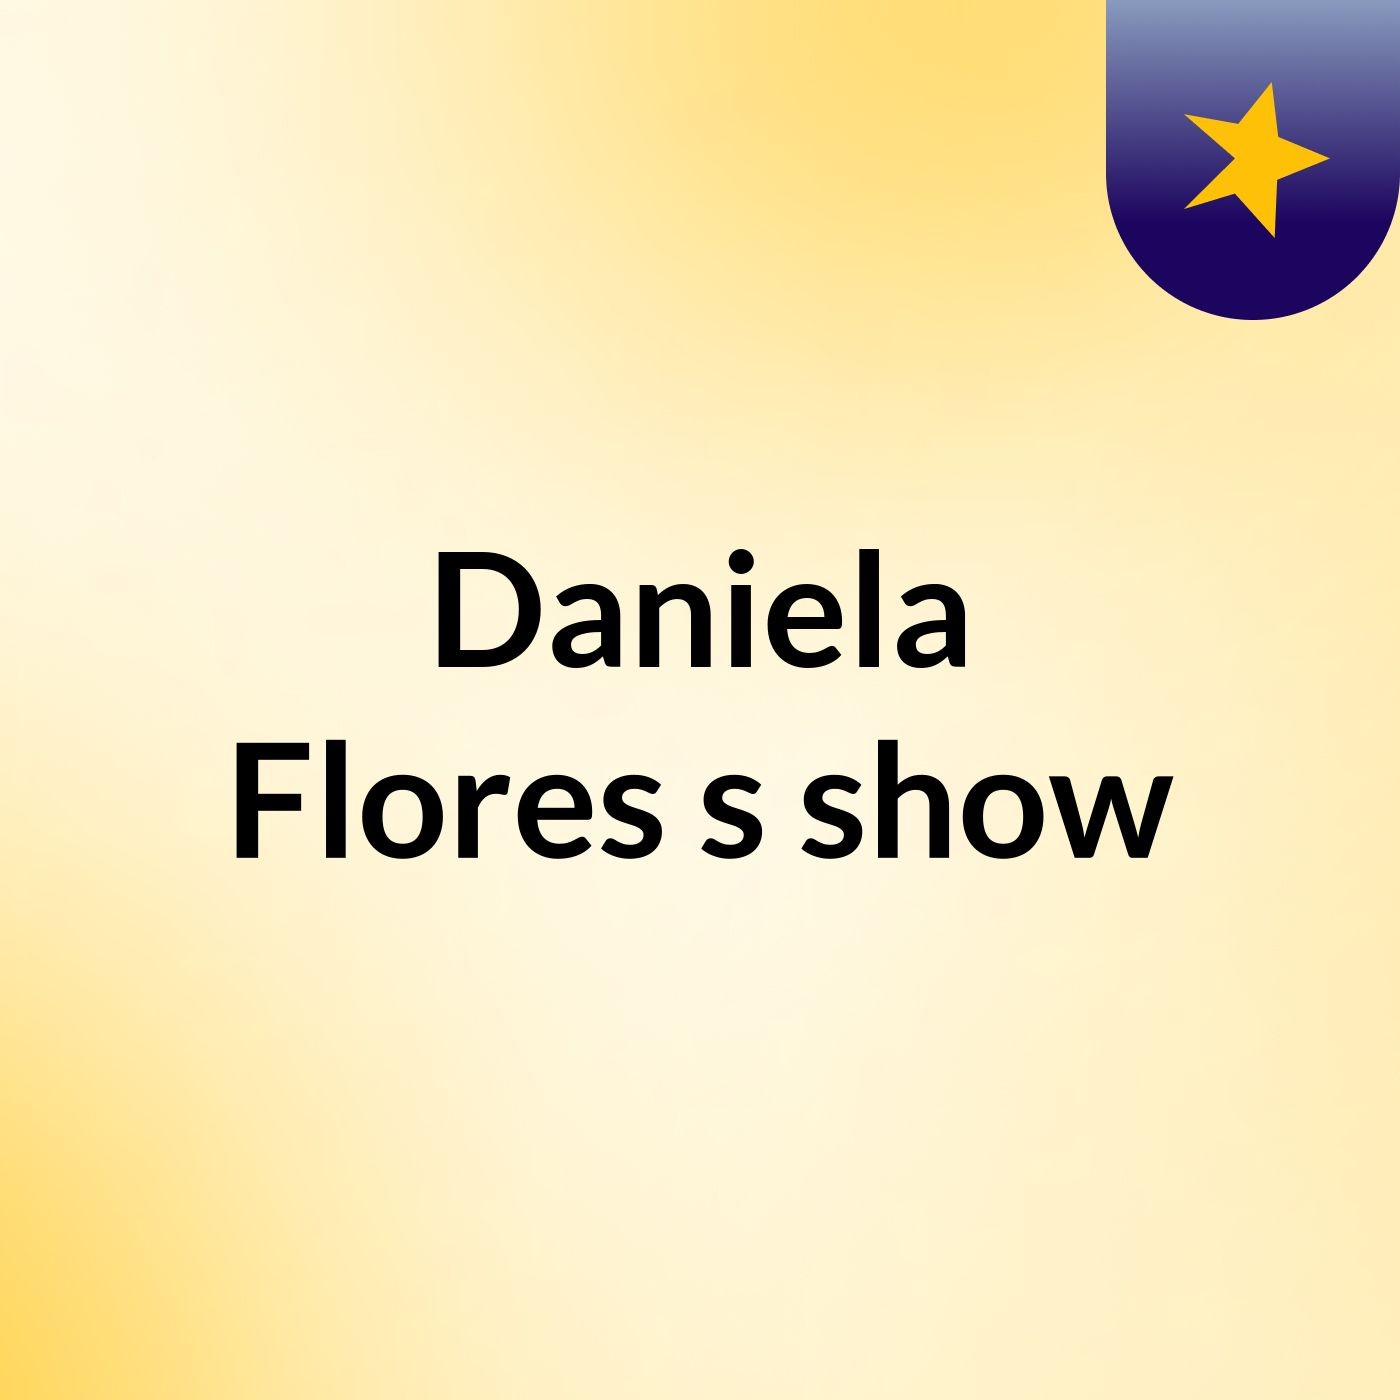 Daniela Flores's show